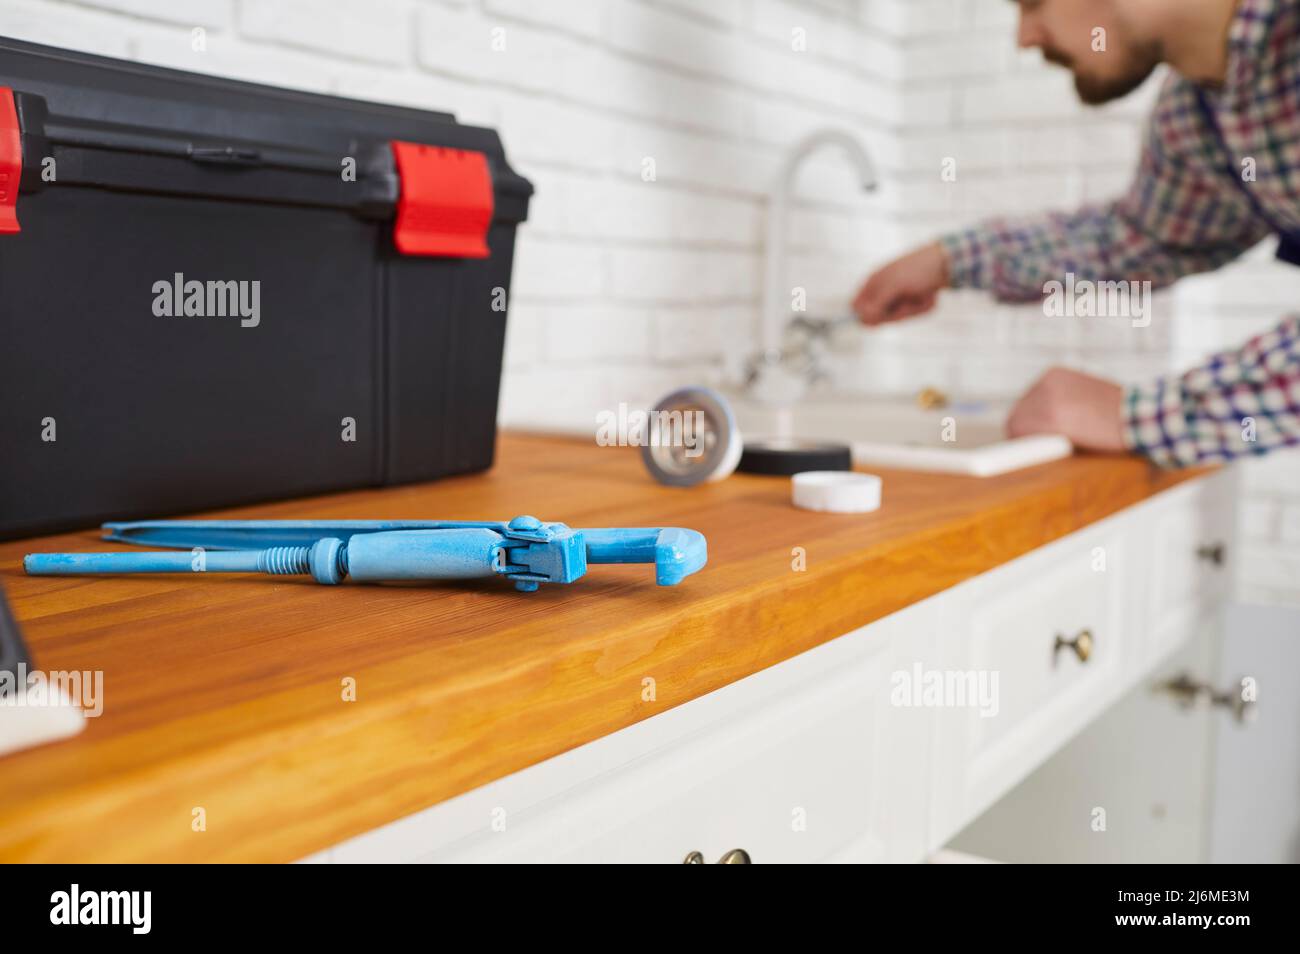 Idraulico usando una chiave e altri attrezzi mentre ripara il rubinetto del dispersore nella cucina Foto Stock